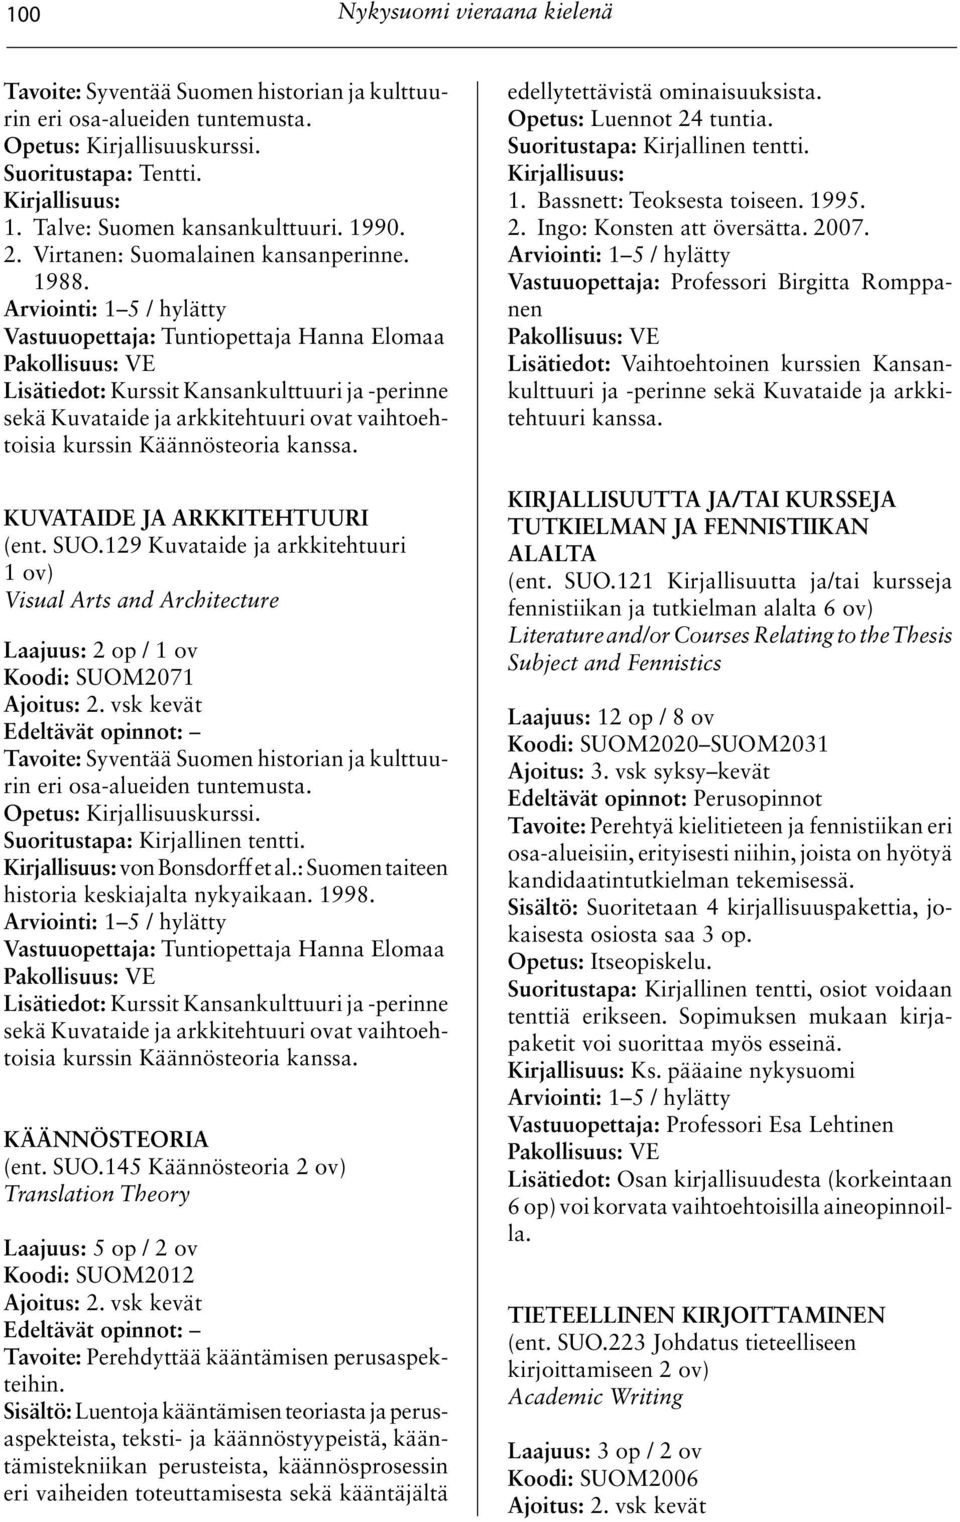 129 Kuvataide ja arkkitehtuuri 1 ov) Visual Arts and Architecture Laajuus: 2 op / 1 ov Koodi: SUOM2071 2. vsk kevät von Bonsdorff et al.: Suomen taiteen historia keskiajalta nykyaikaan. 1998.